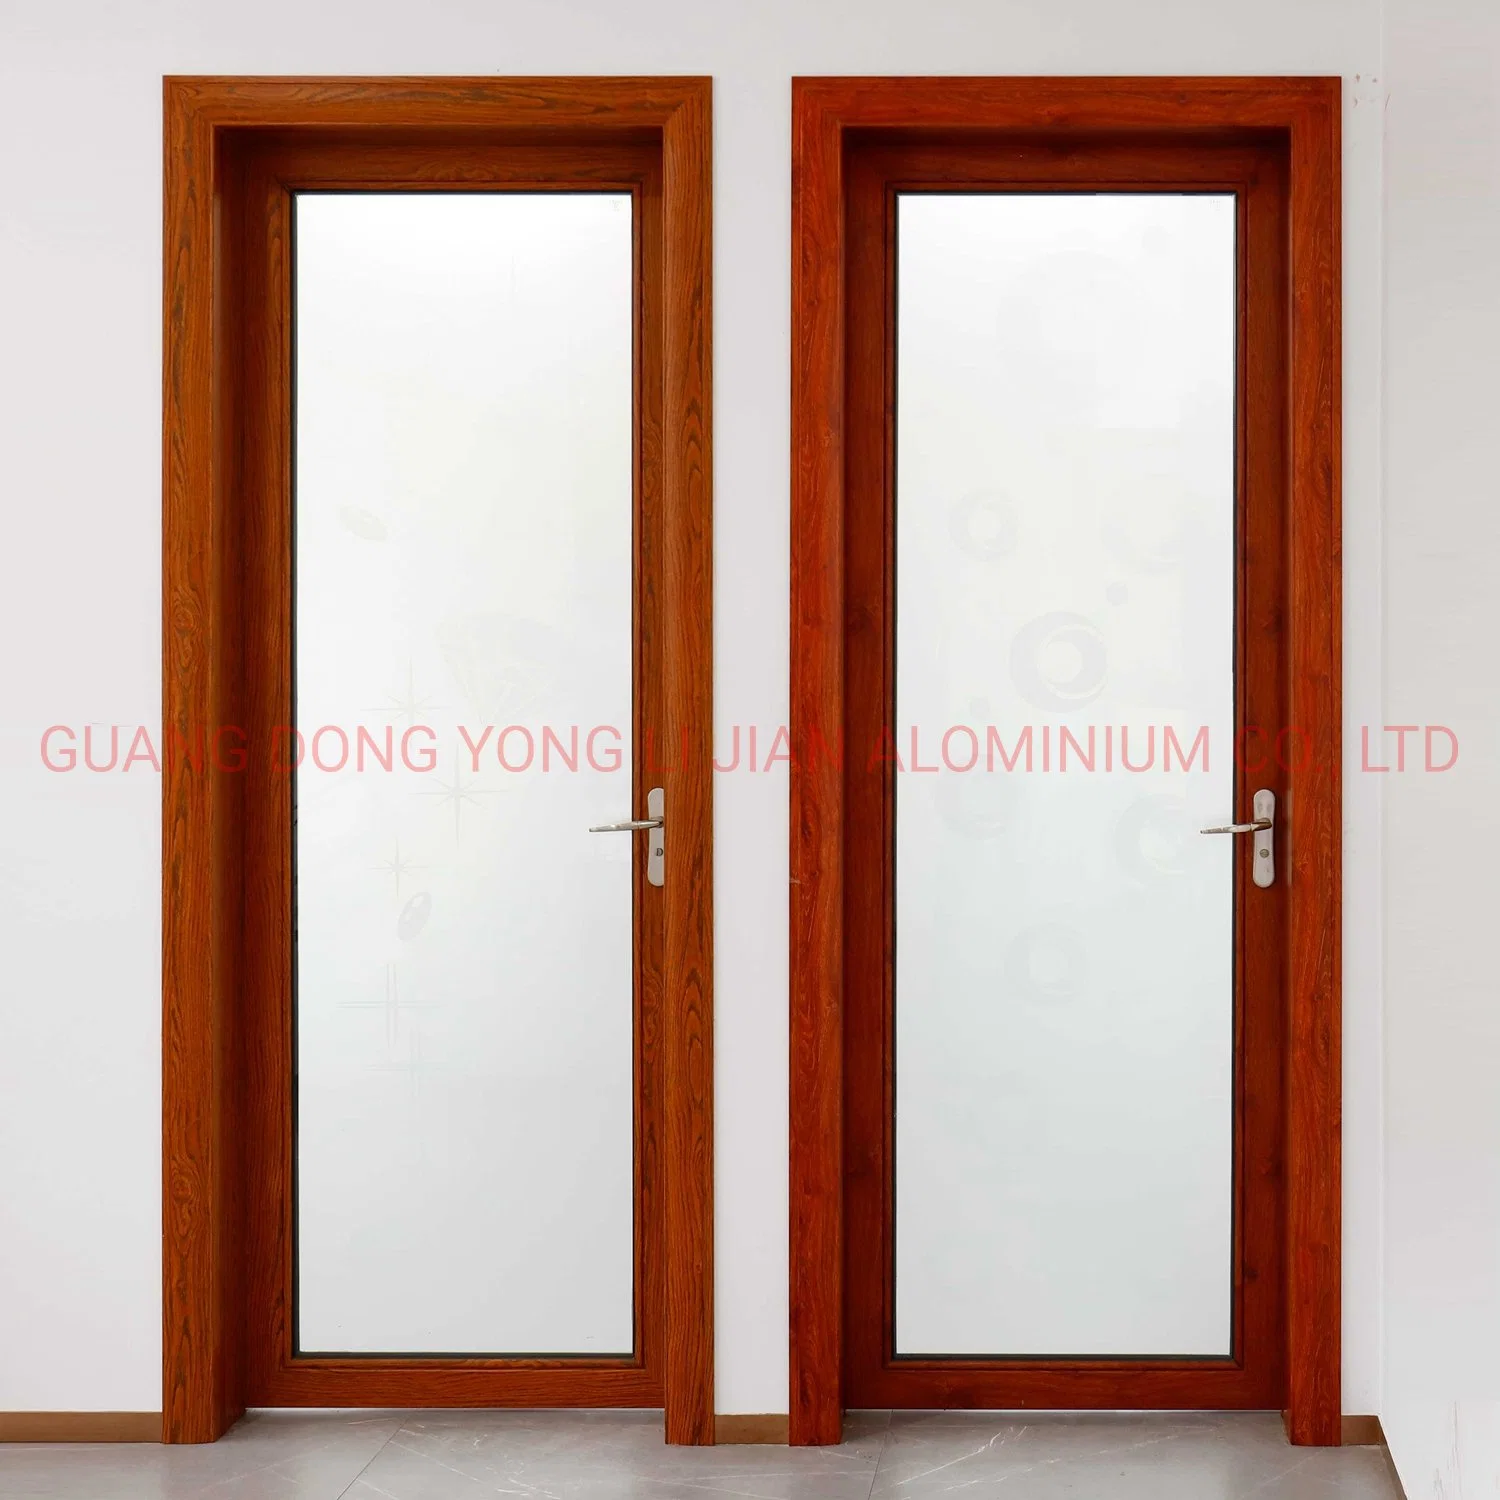 China fábrica de aluminio templado bajo E puerta corrediza de vidrio de aislamiento térmico de la puerta de Casement///colgados de apertura de puertas de aluminio plegable corrediza